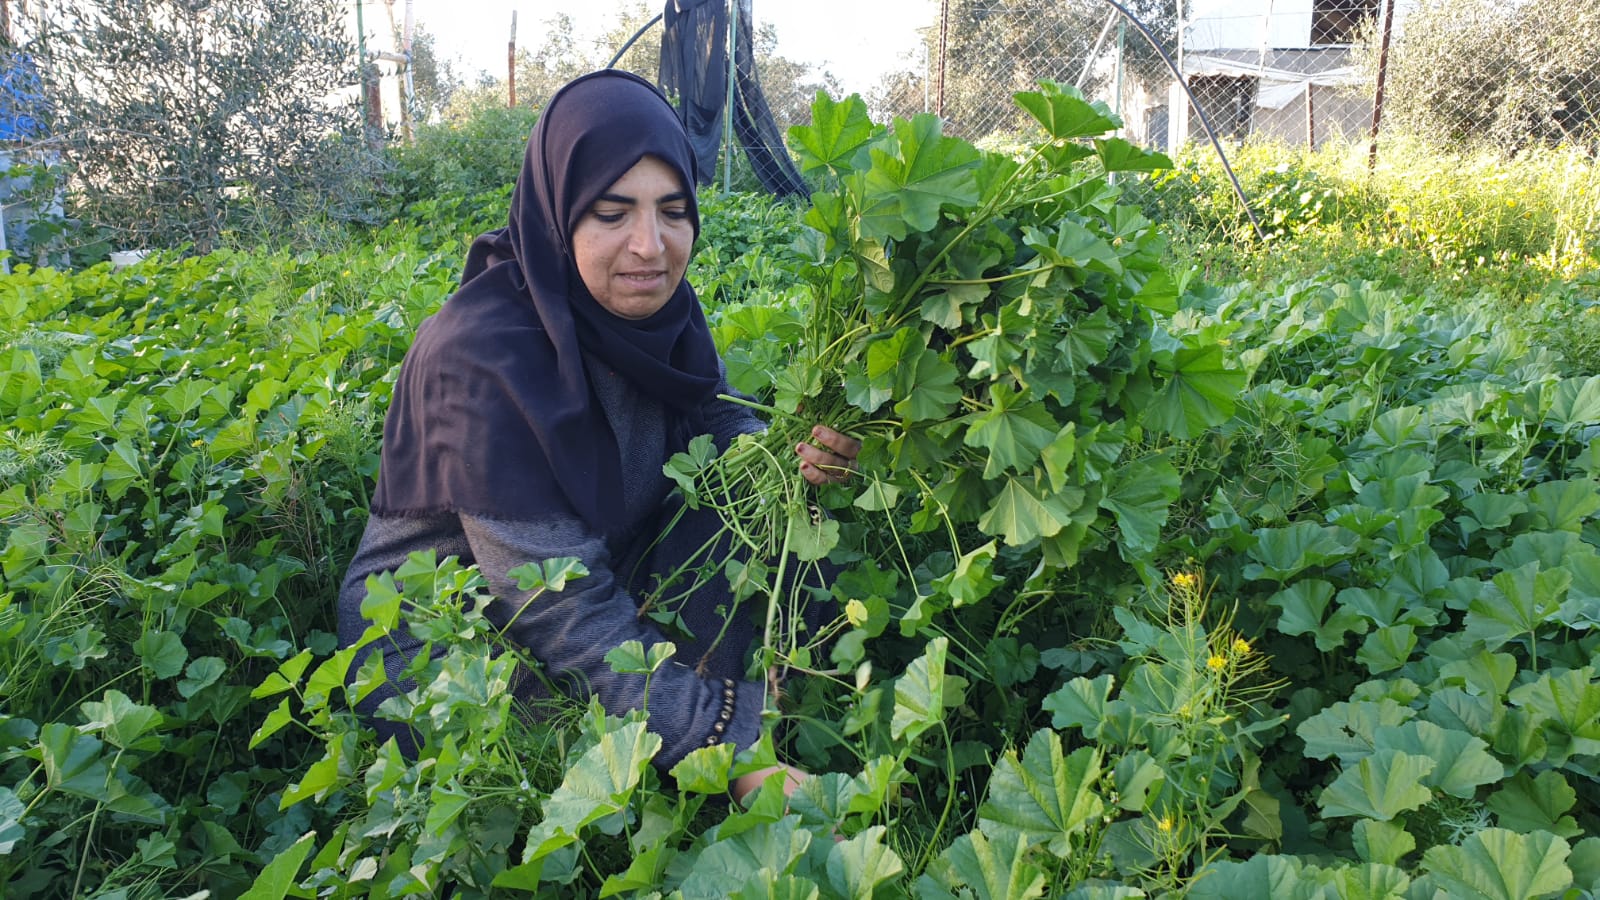 كفاح لأجل لقمة العيش موسم قطف العنب يوفر عمل للنساء الفلسطينيات